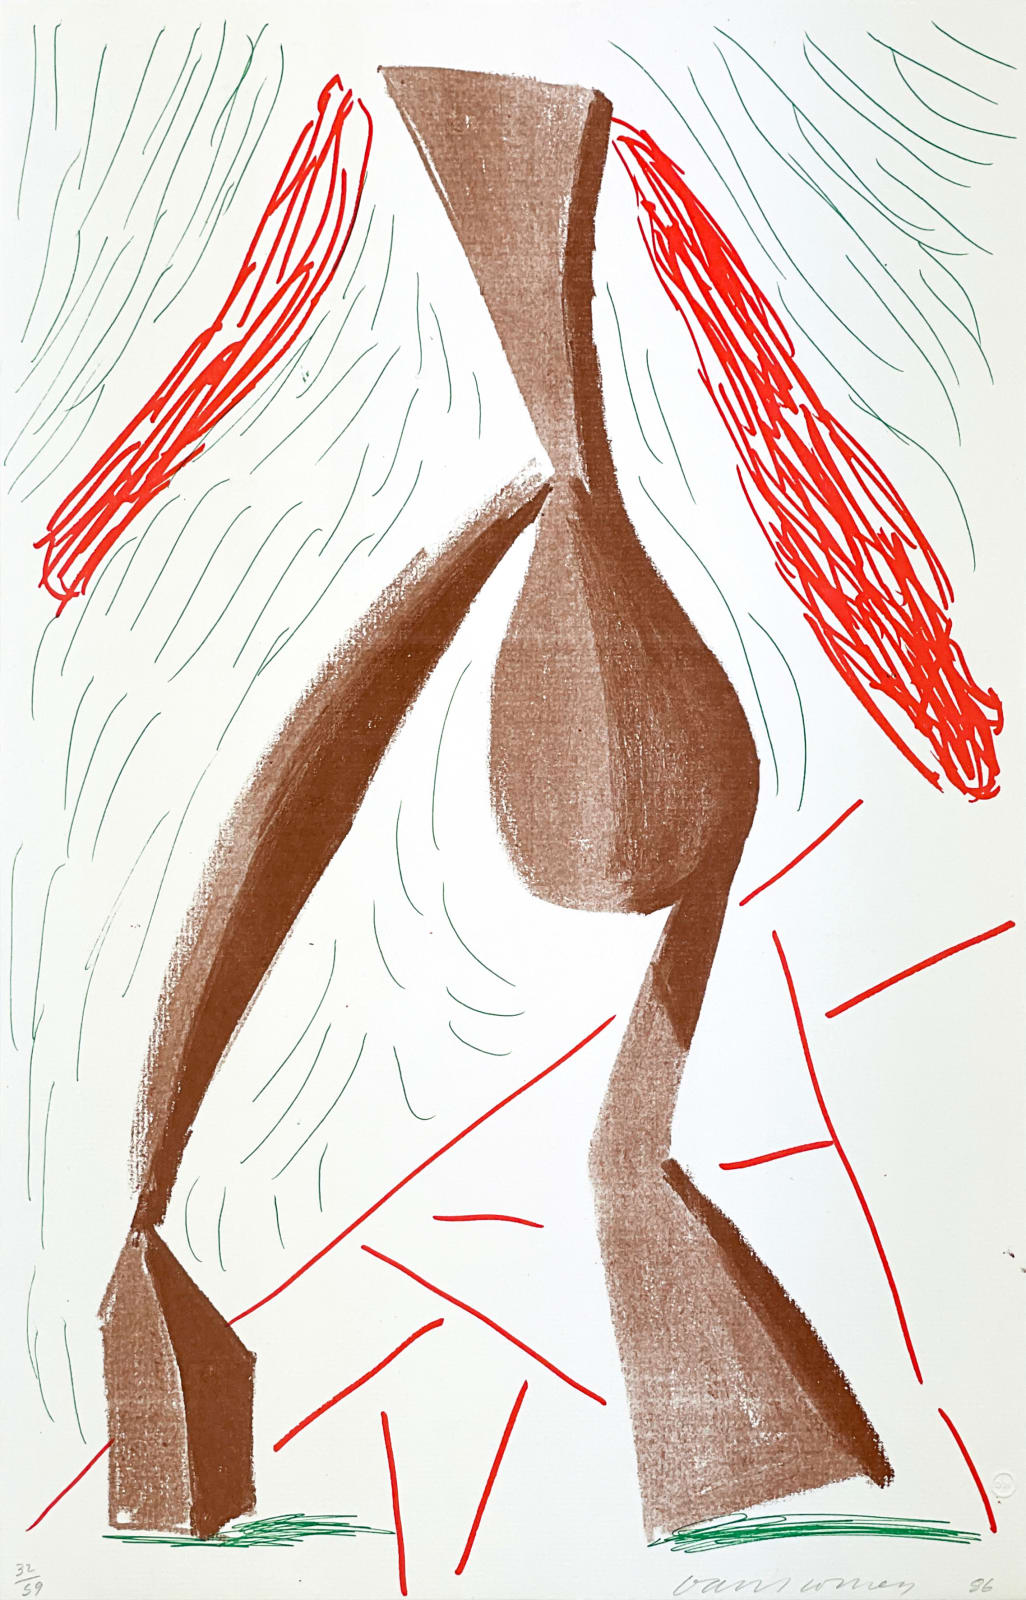 David Hockney, Walking, June 1986, 1986